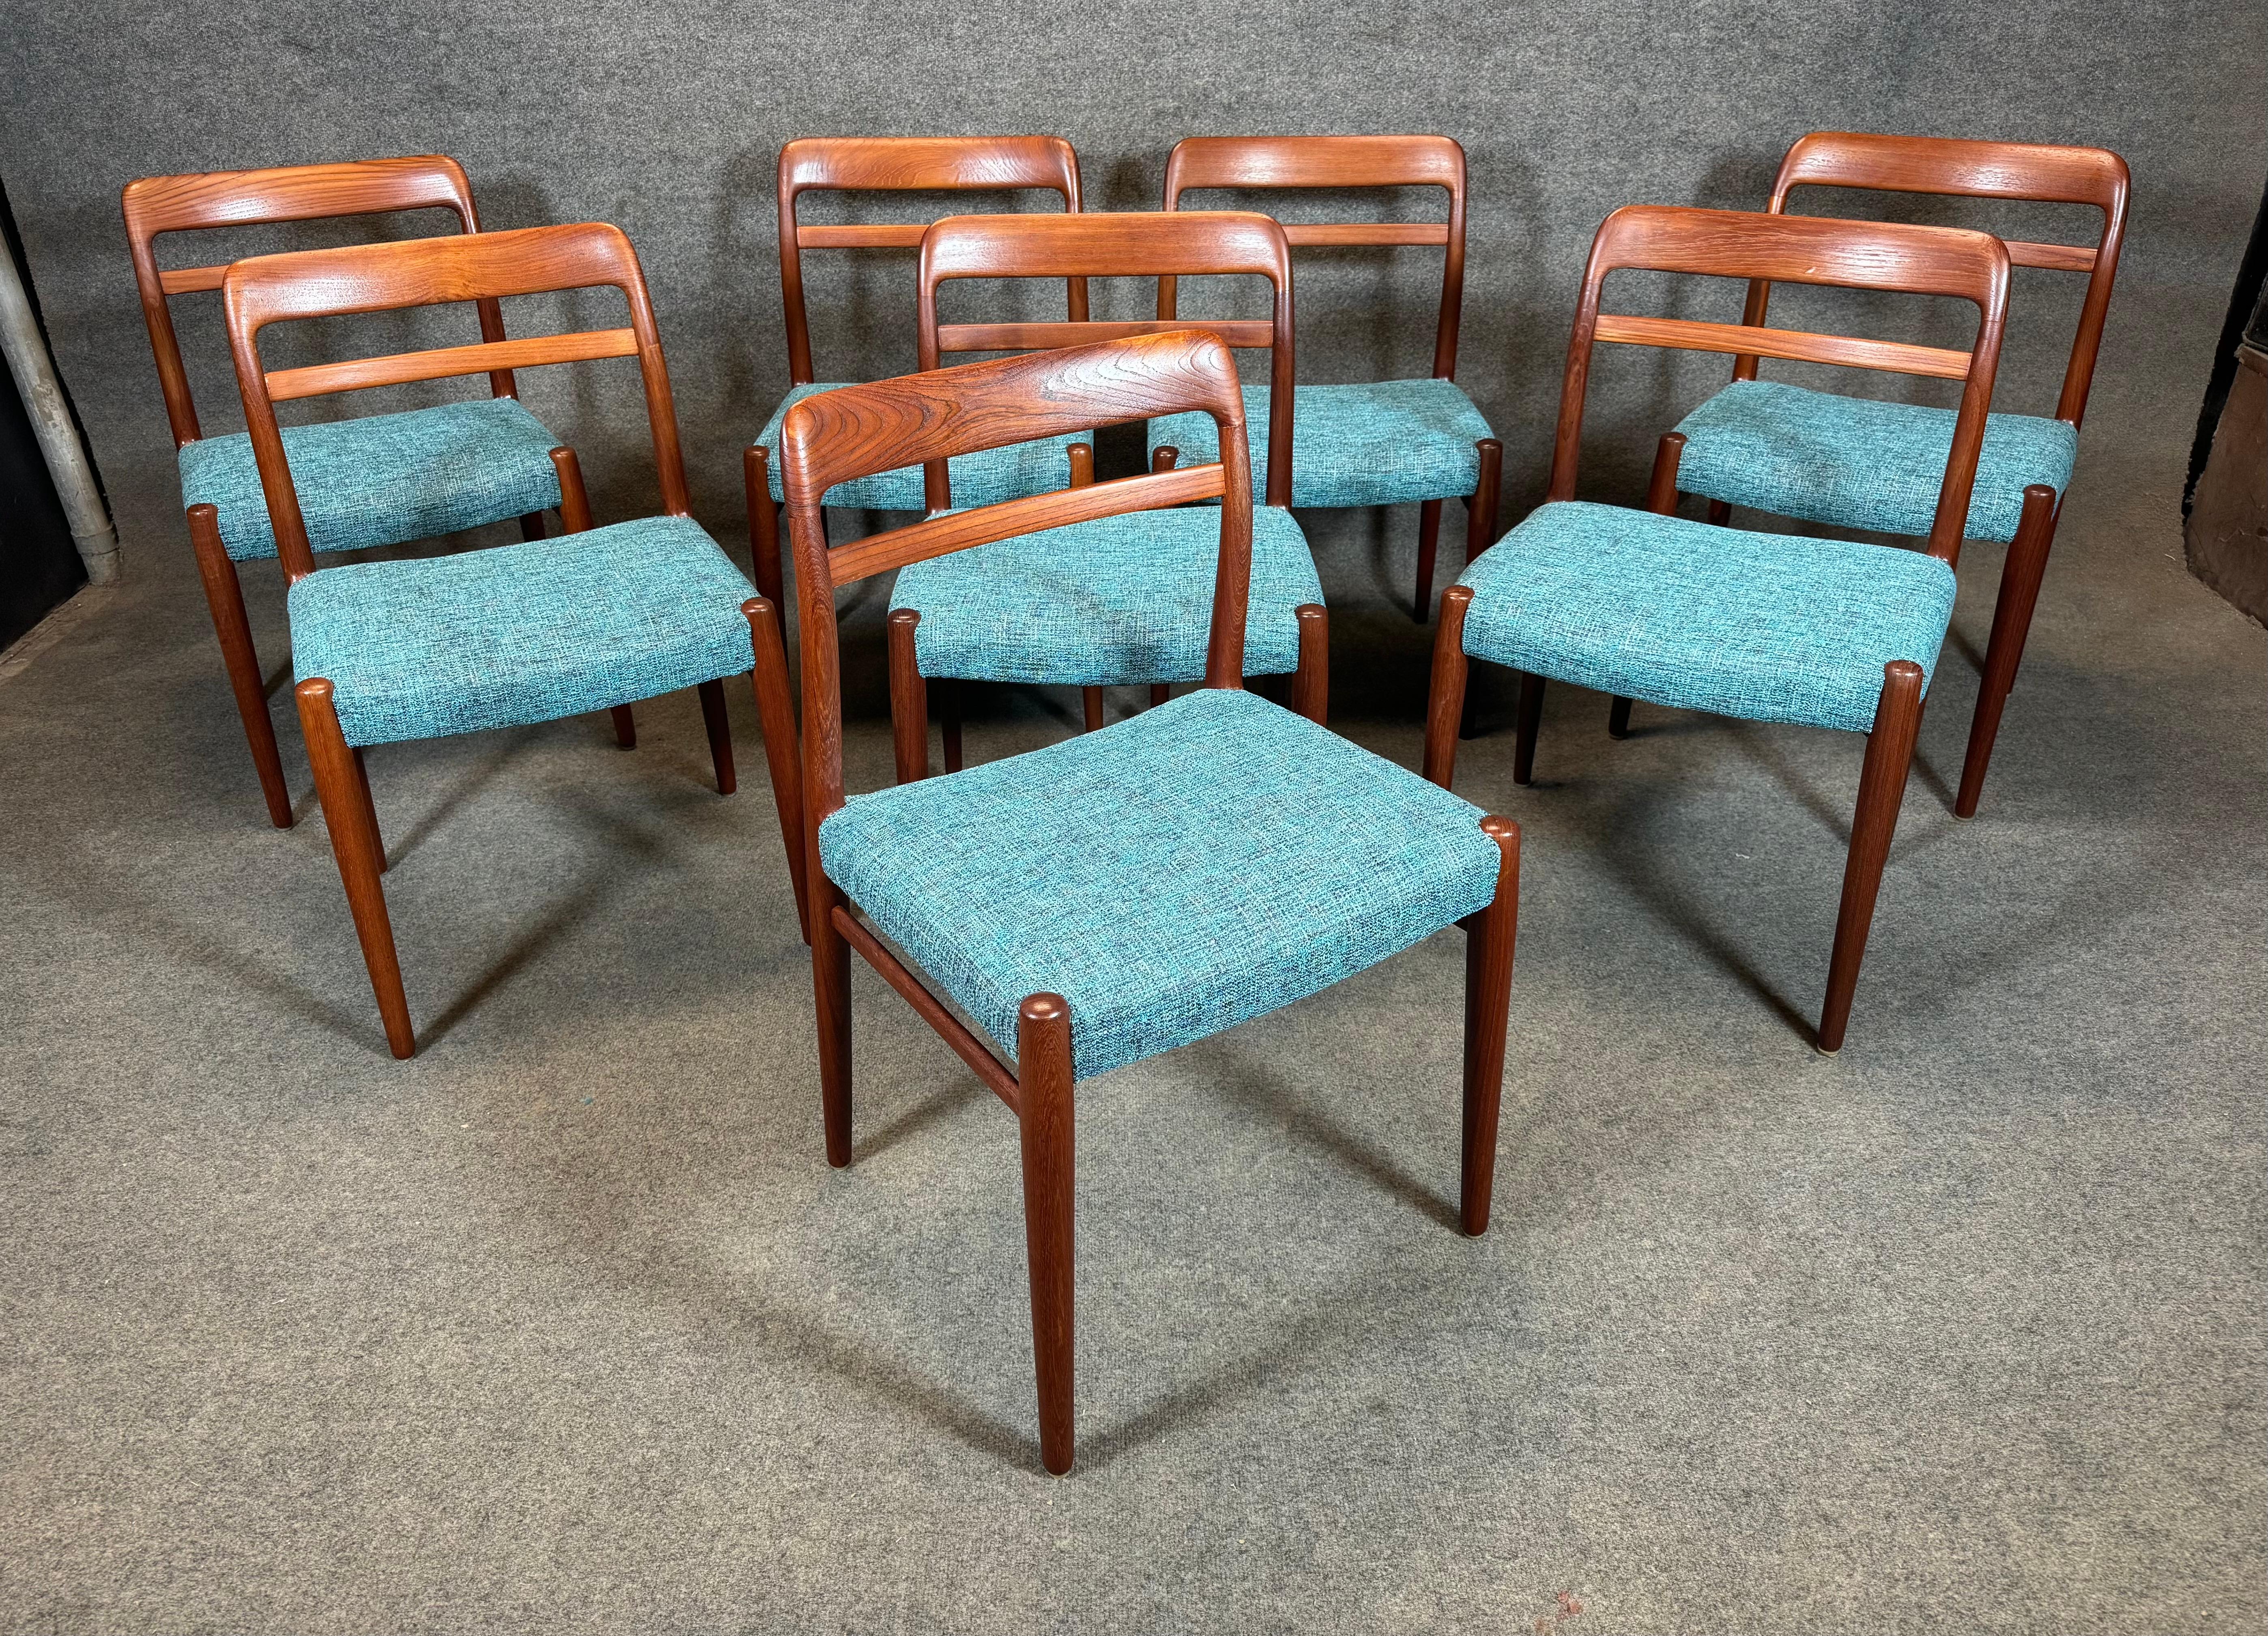 Hier ist eine schöne Reihe von 8 Vintage skandinavischen modernen Teakholz Esszimmerstühle Modell 145 von Alf Aarseth entworfen und von Gustav Bahus in Norwegen in den 1960er Jahren hergestellt.
Dieses exklusive Set komfortabler Stühle, das vor